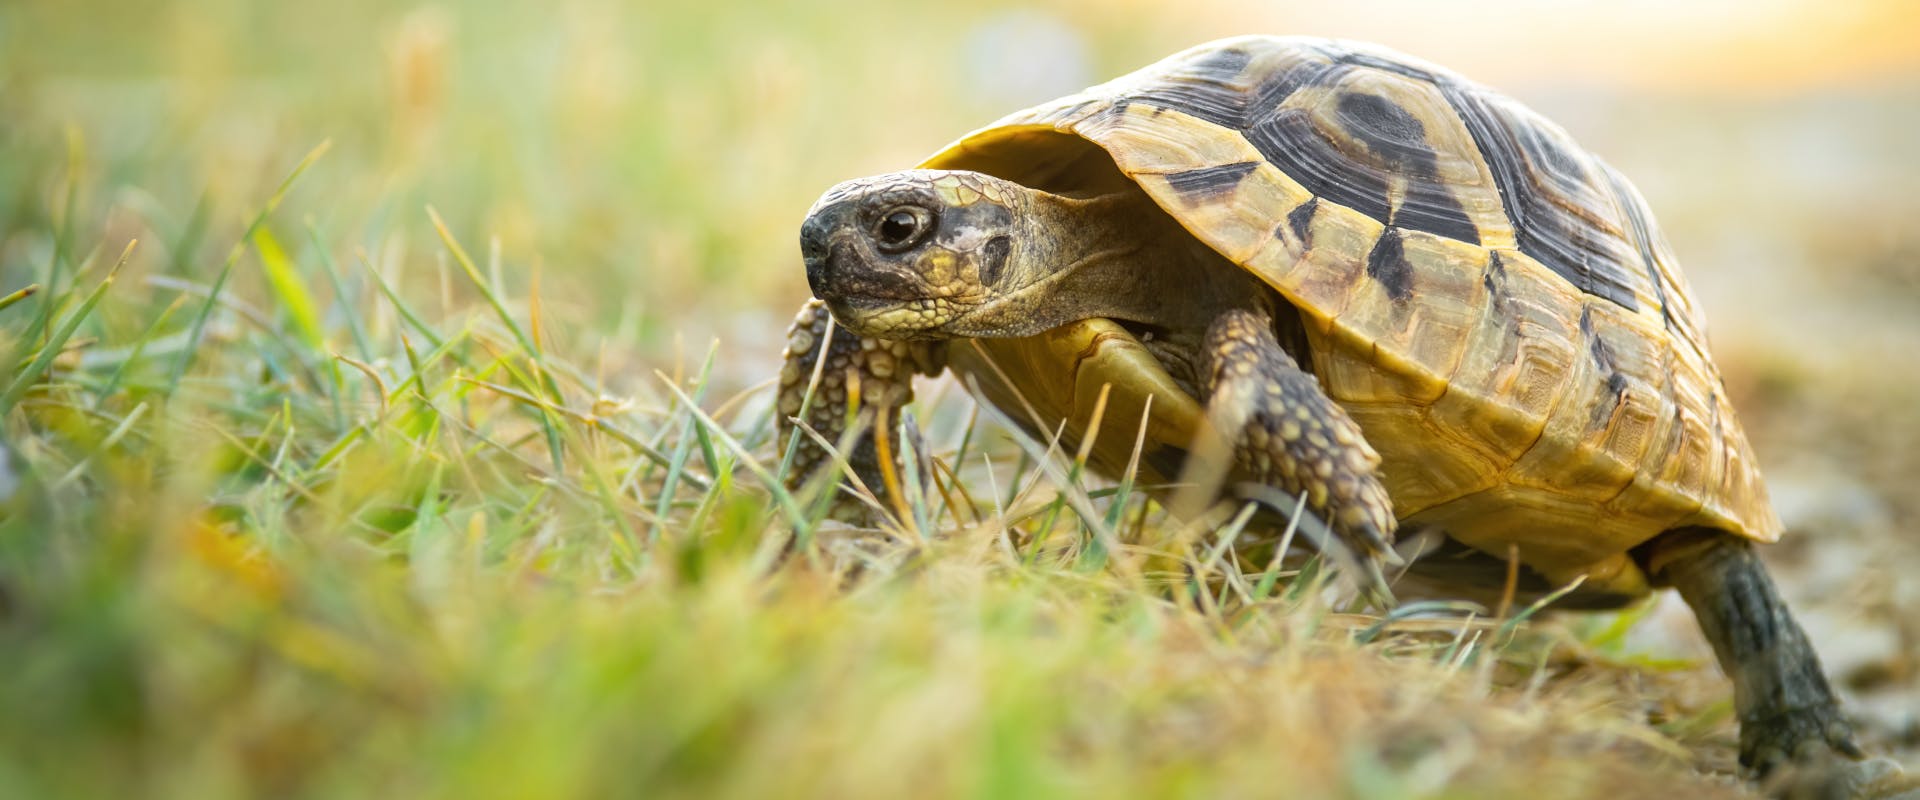 A tortoise outside.